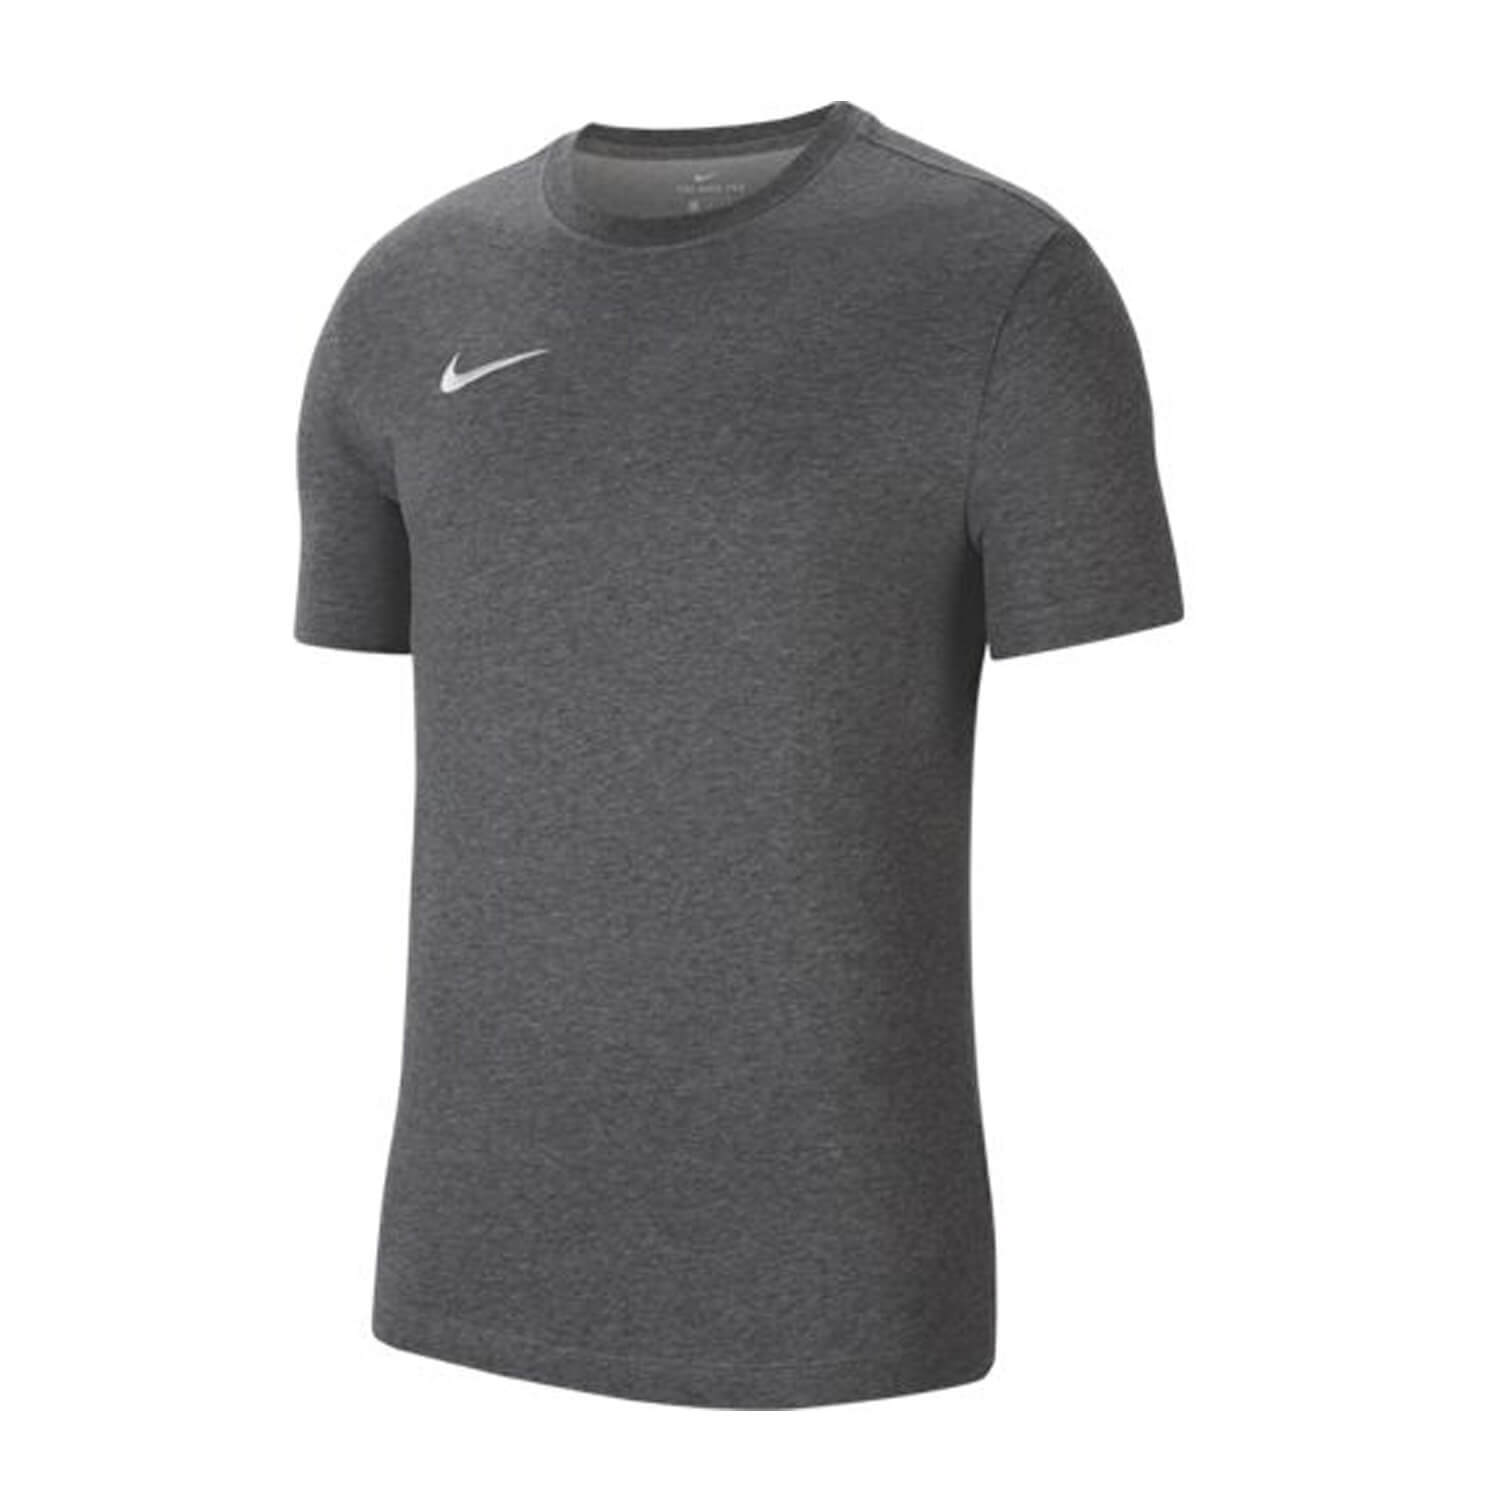 Nike Park 20 Tee Beyaz Erkek Tişört - CW6952-100